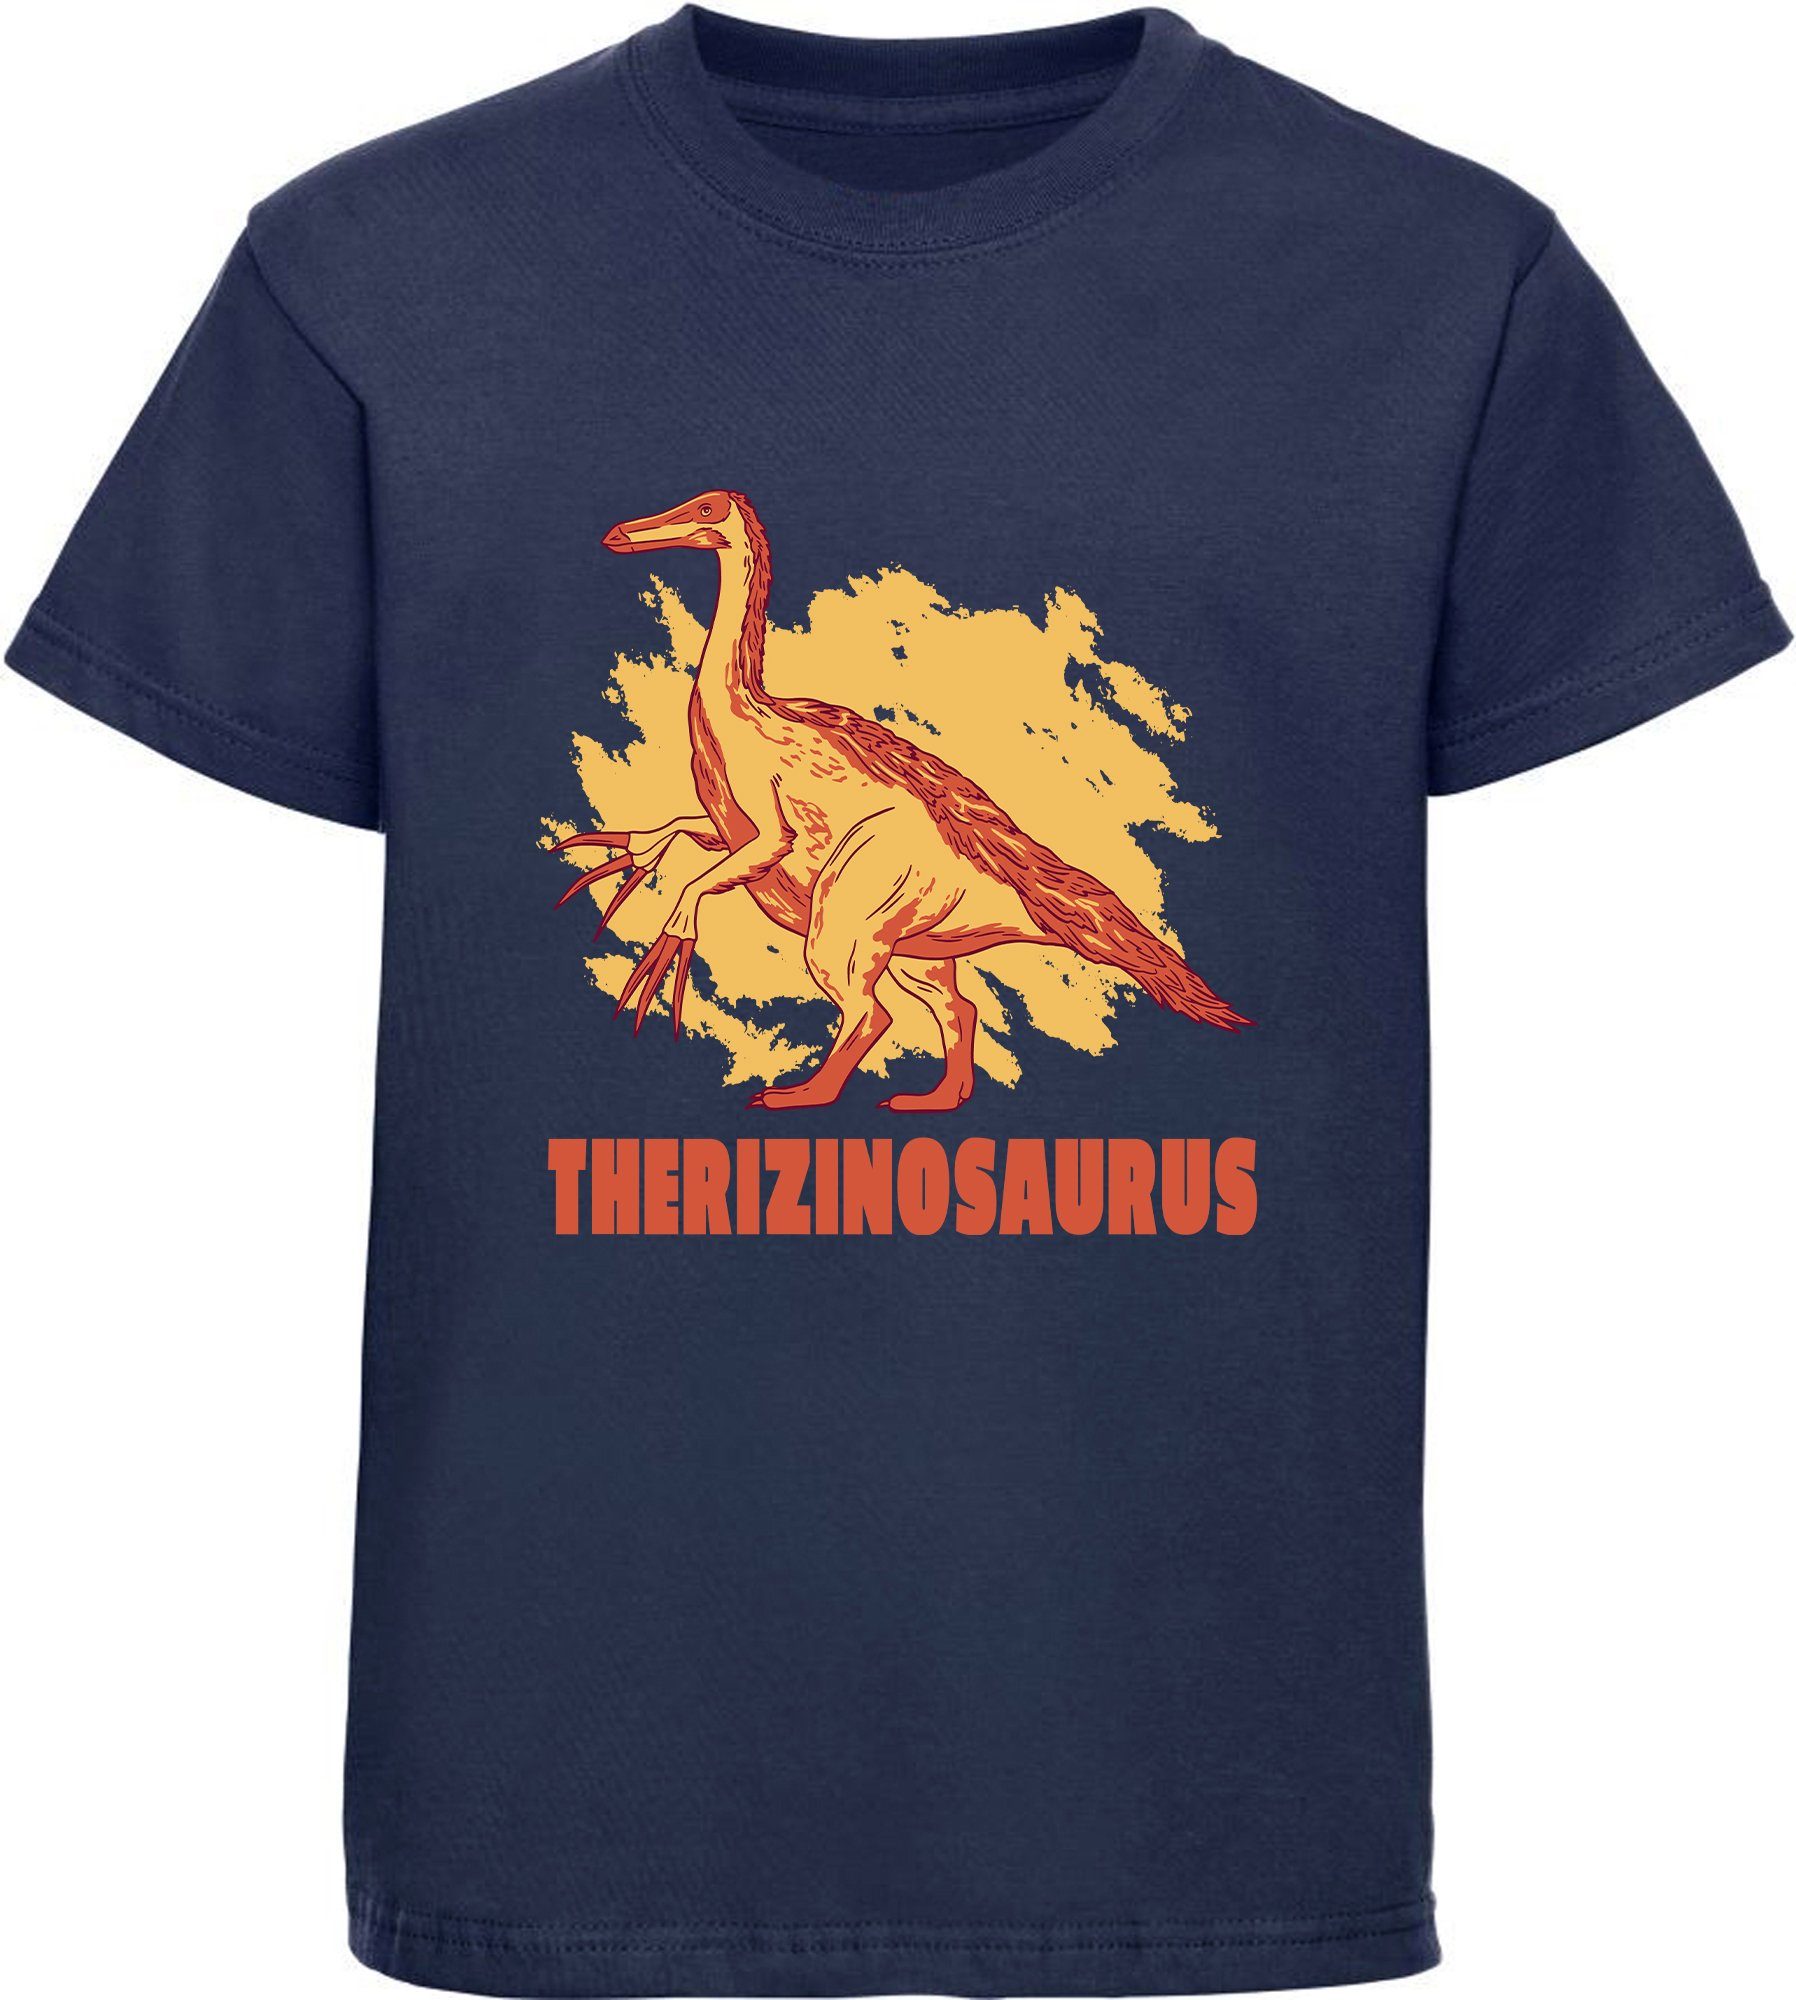 Dino, i87 blau, Therizinosaurus Kinder blau Print-Shirt weiß, mit T-Shirt bedrucktes Baumwollshirt rot, mit navy MyDesign24 schwarz,